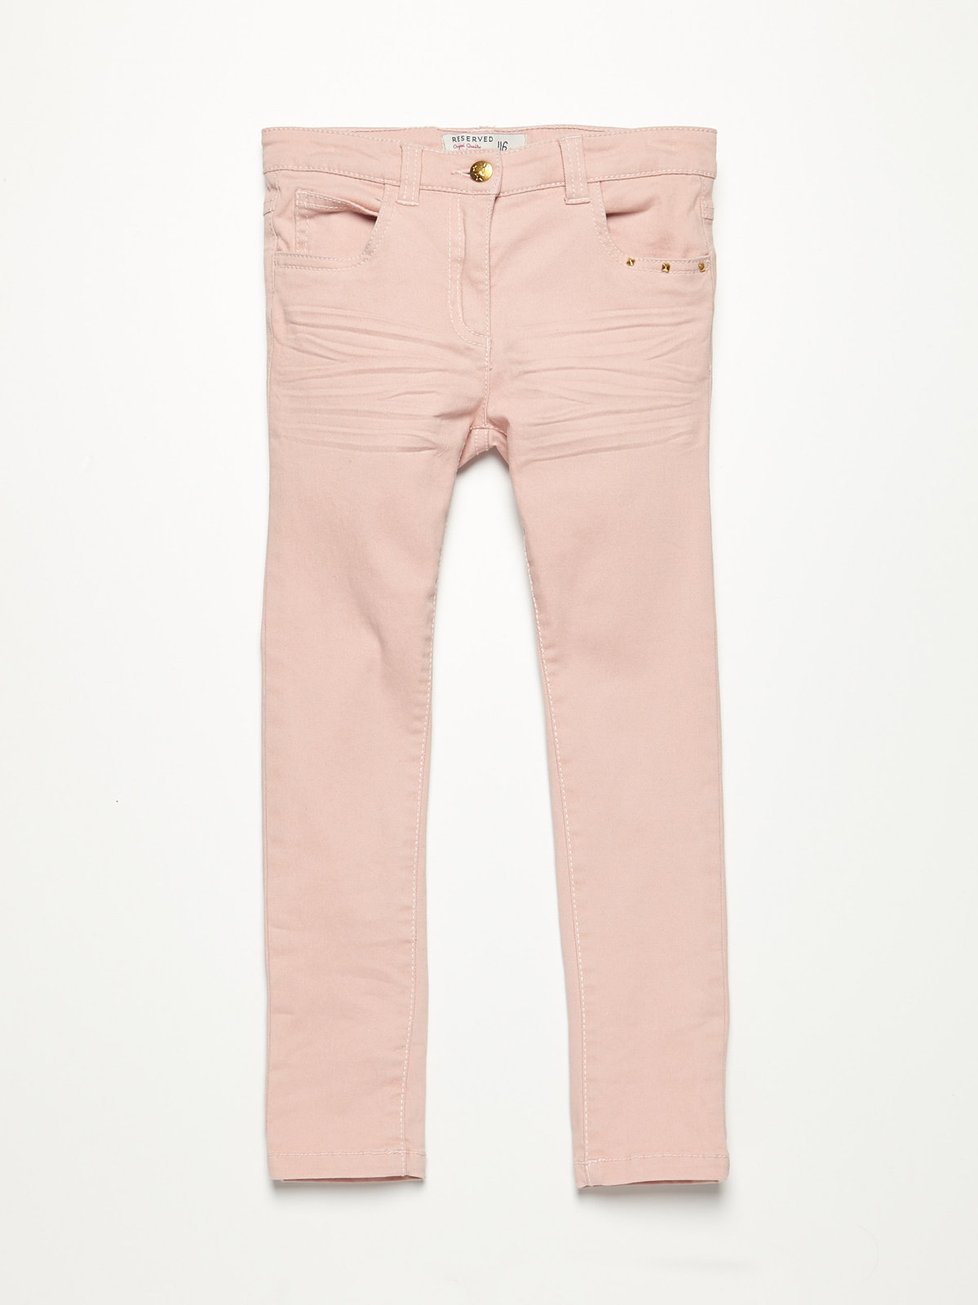 Světle růžové kalhoty, Reserved, 349 Kč.